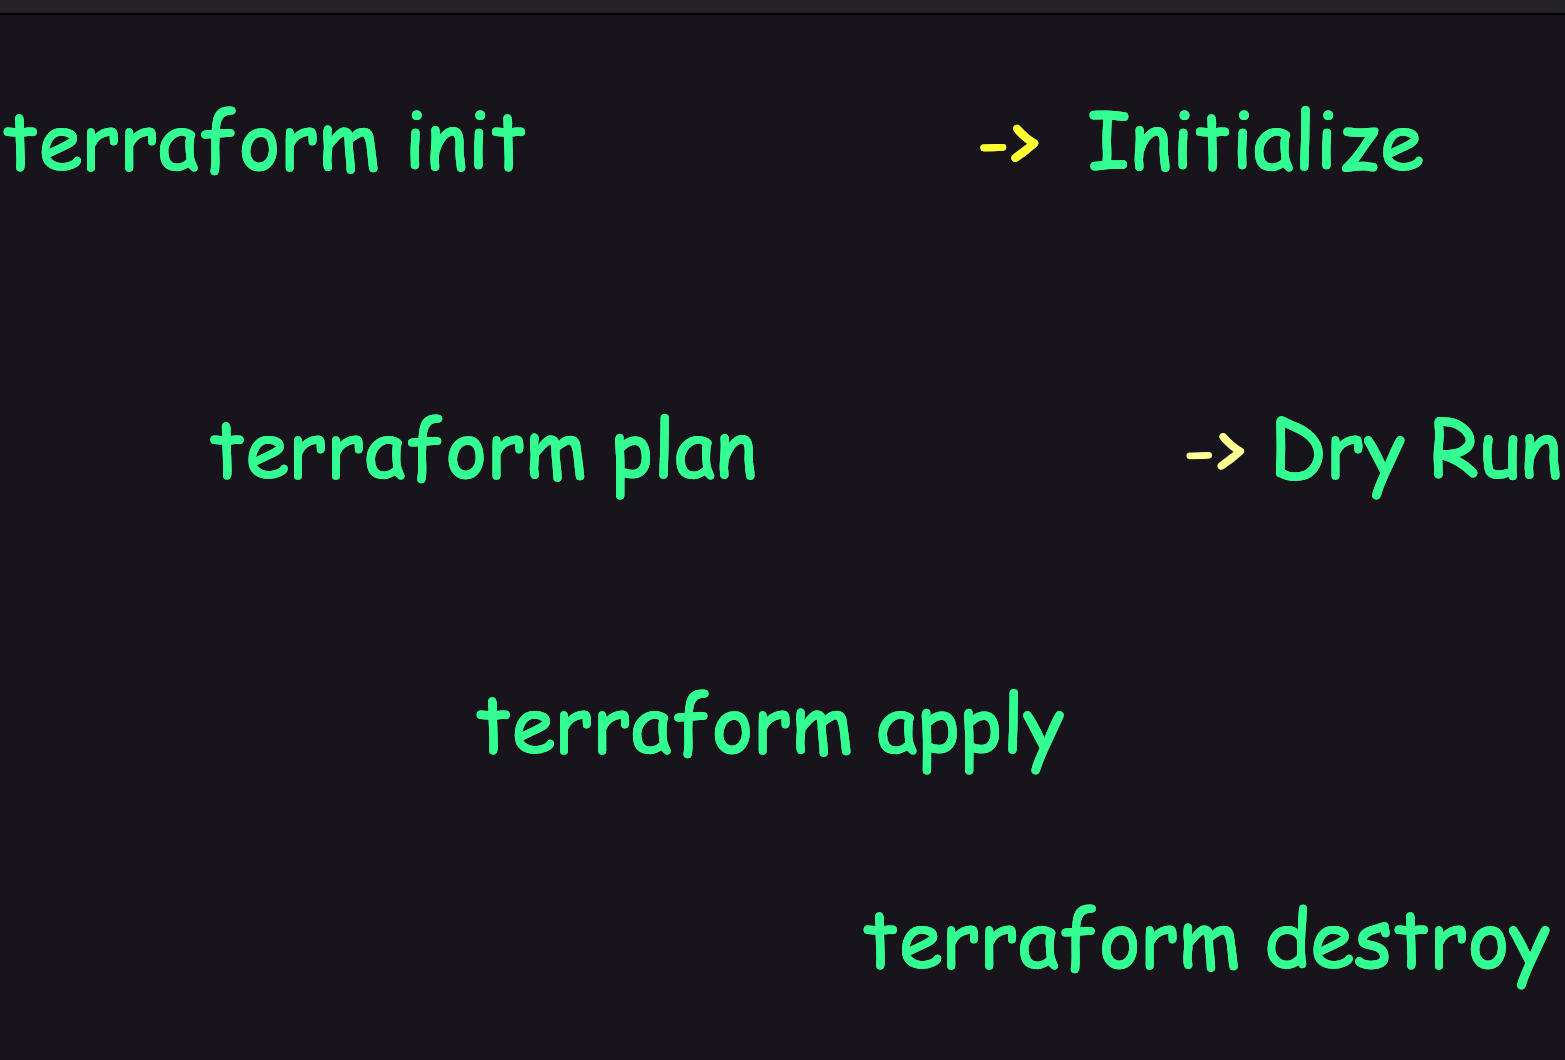 Terraform Commands